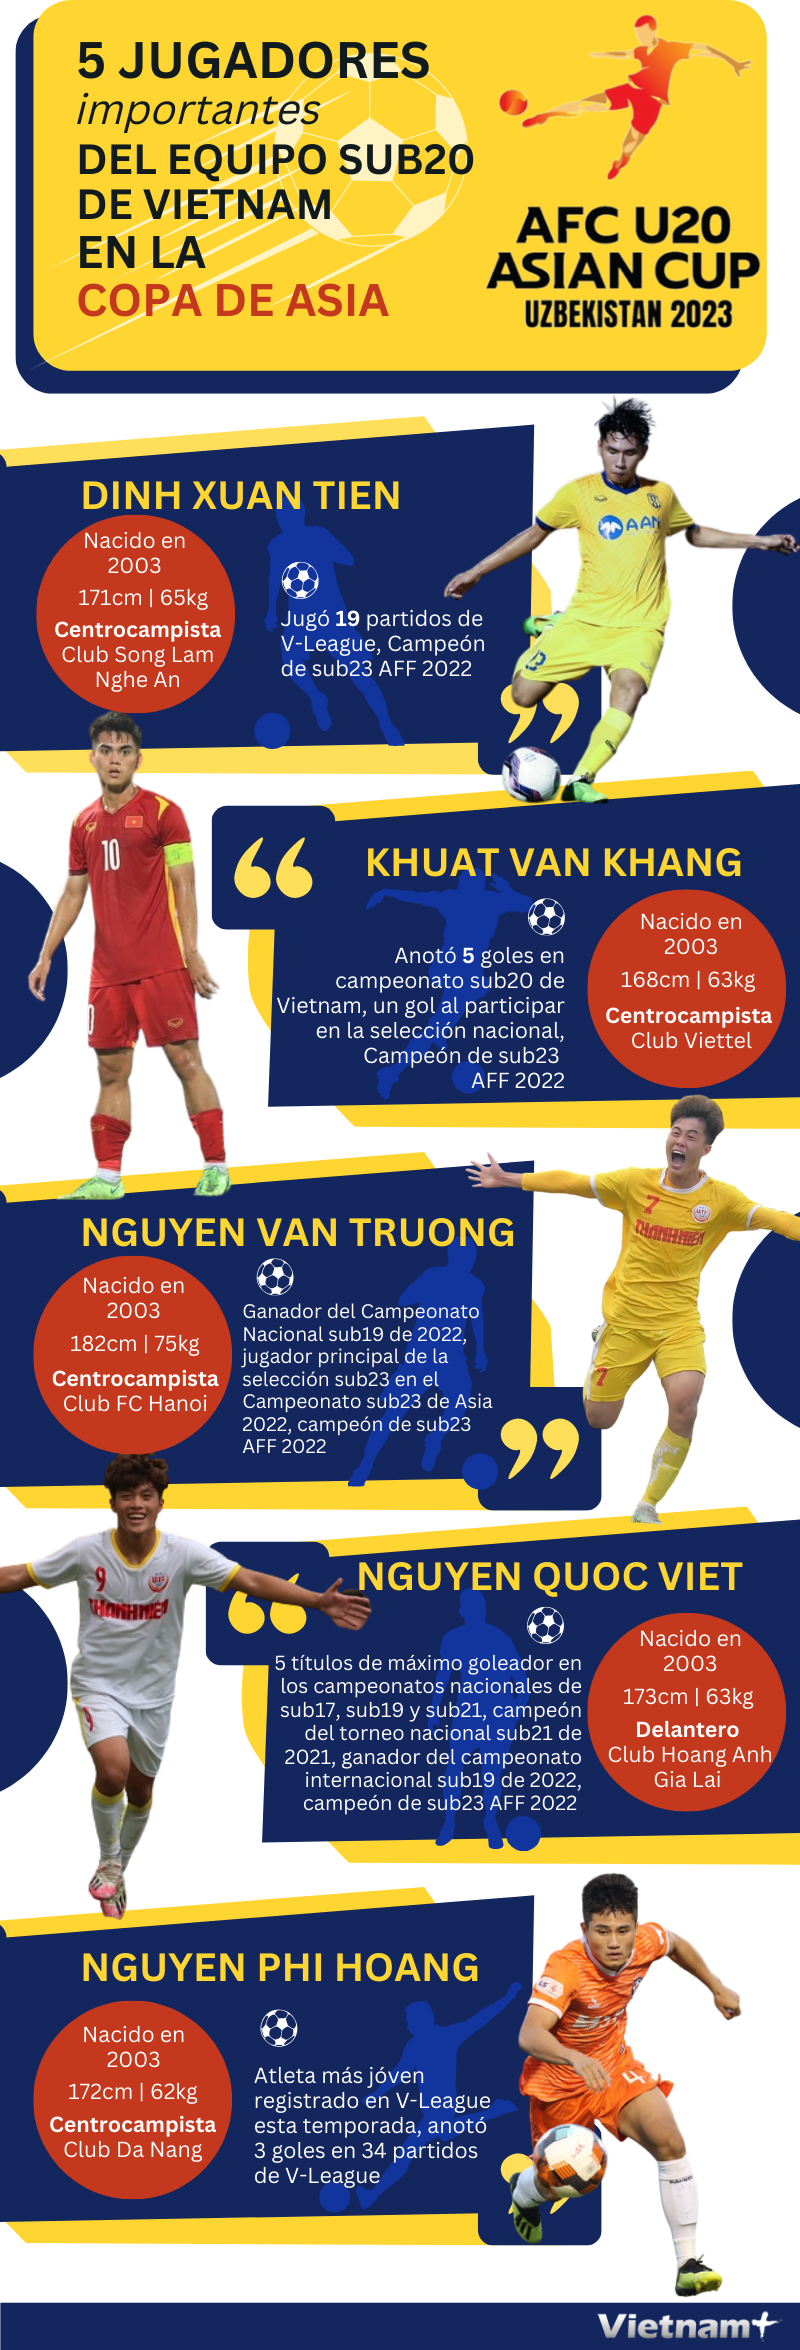 Cinco jugadores importantes del equipo sub20 de Vietnam en la Copa de Asia hinh anh 1